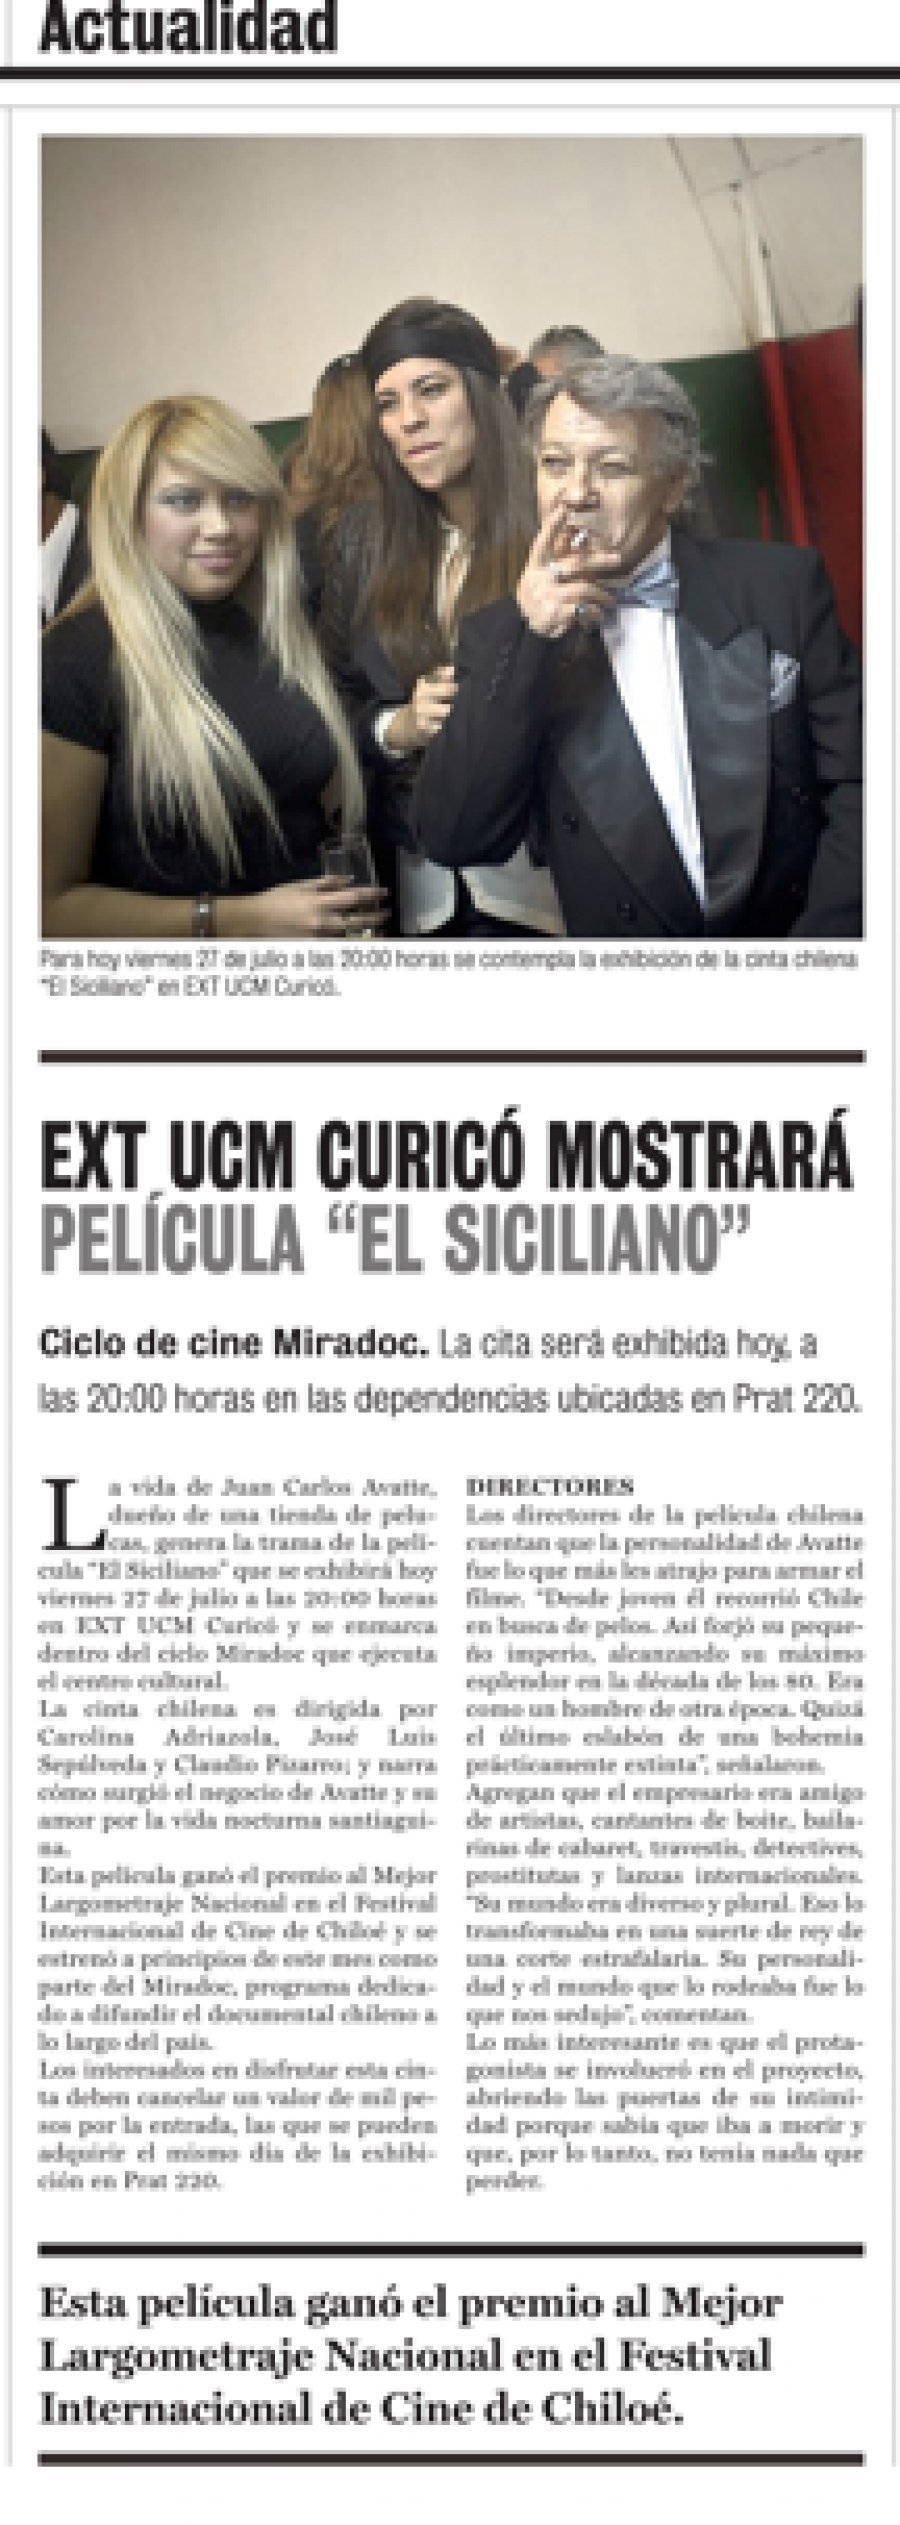 27 de julio en Diario La Prensa: “EXT UCM Curicó mostrará película “El Siciliano”